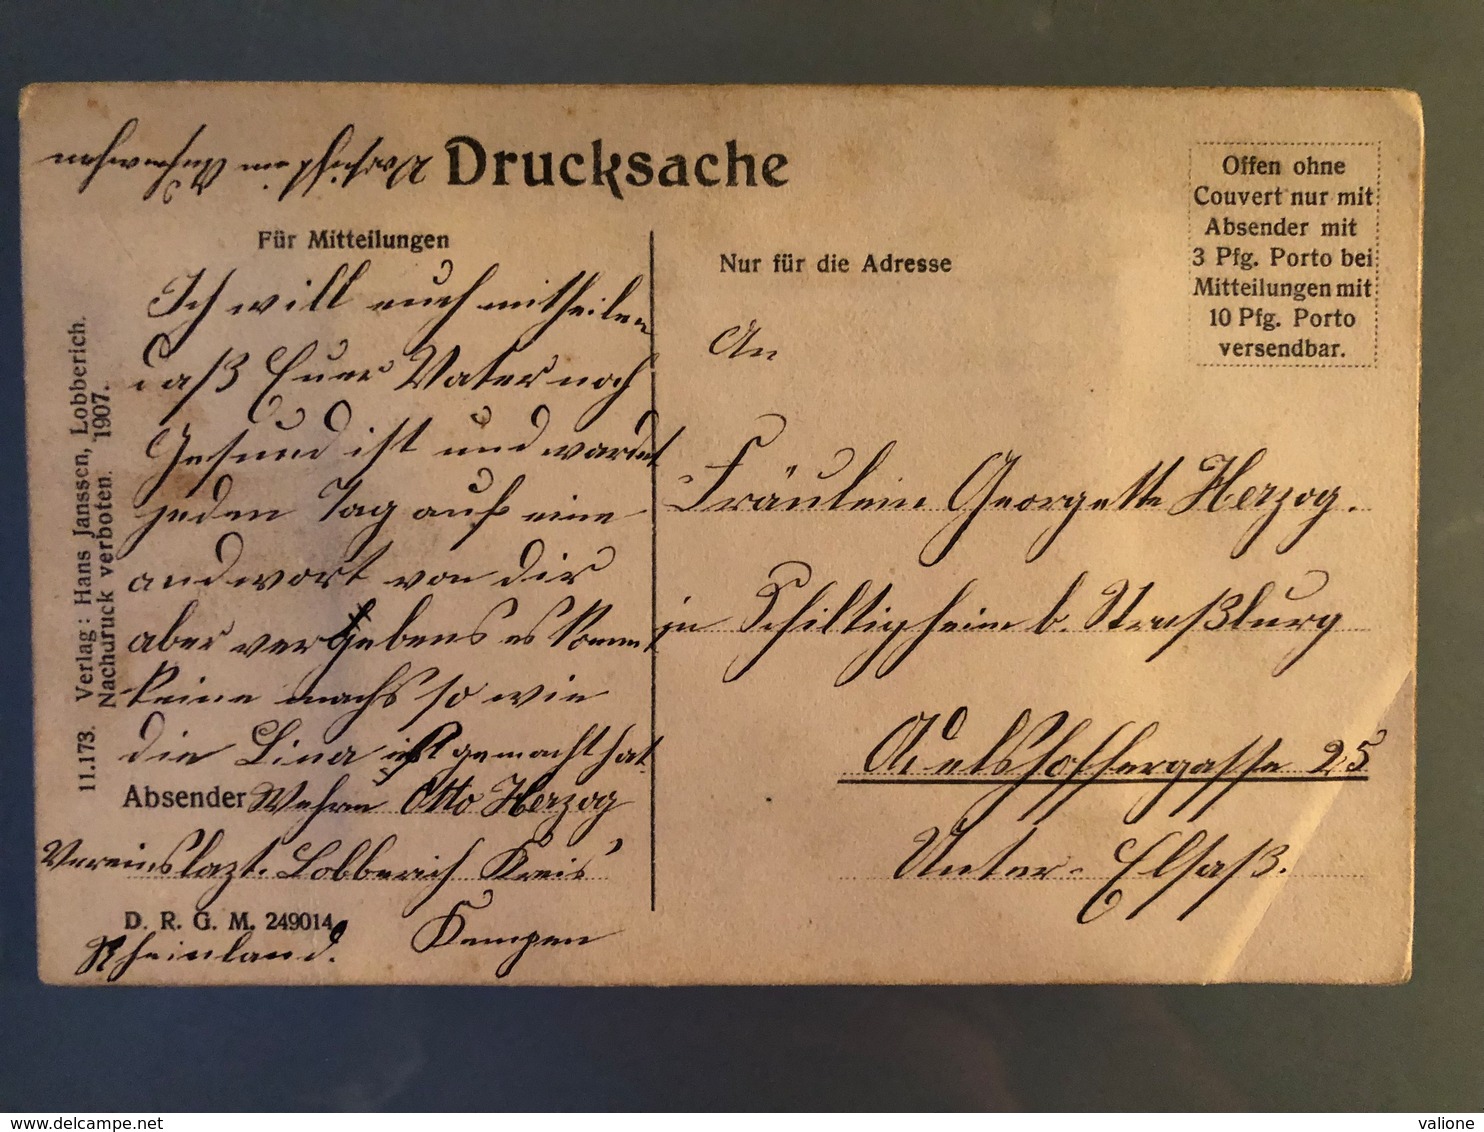 AK GRUSS AUS LOBBERICH Totalansicht Pour Schiltigheim En Alsace 1907. Verlag Hans Janssen - Nettetal